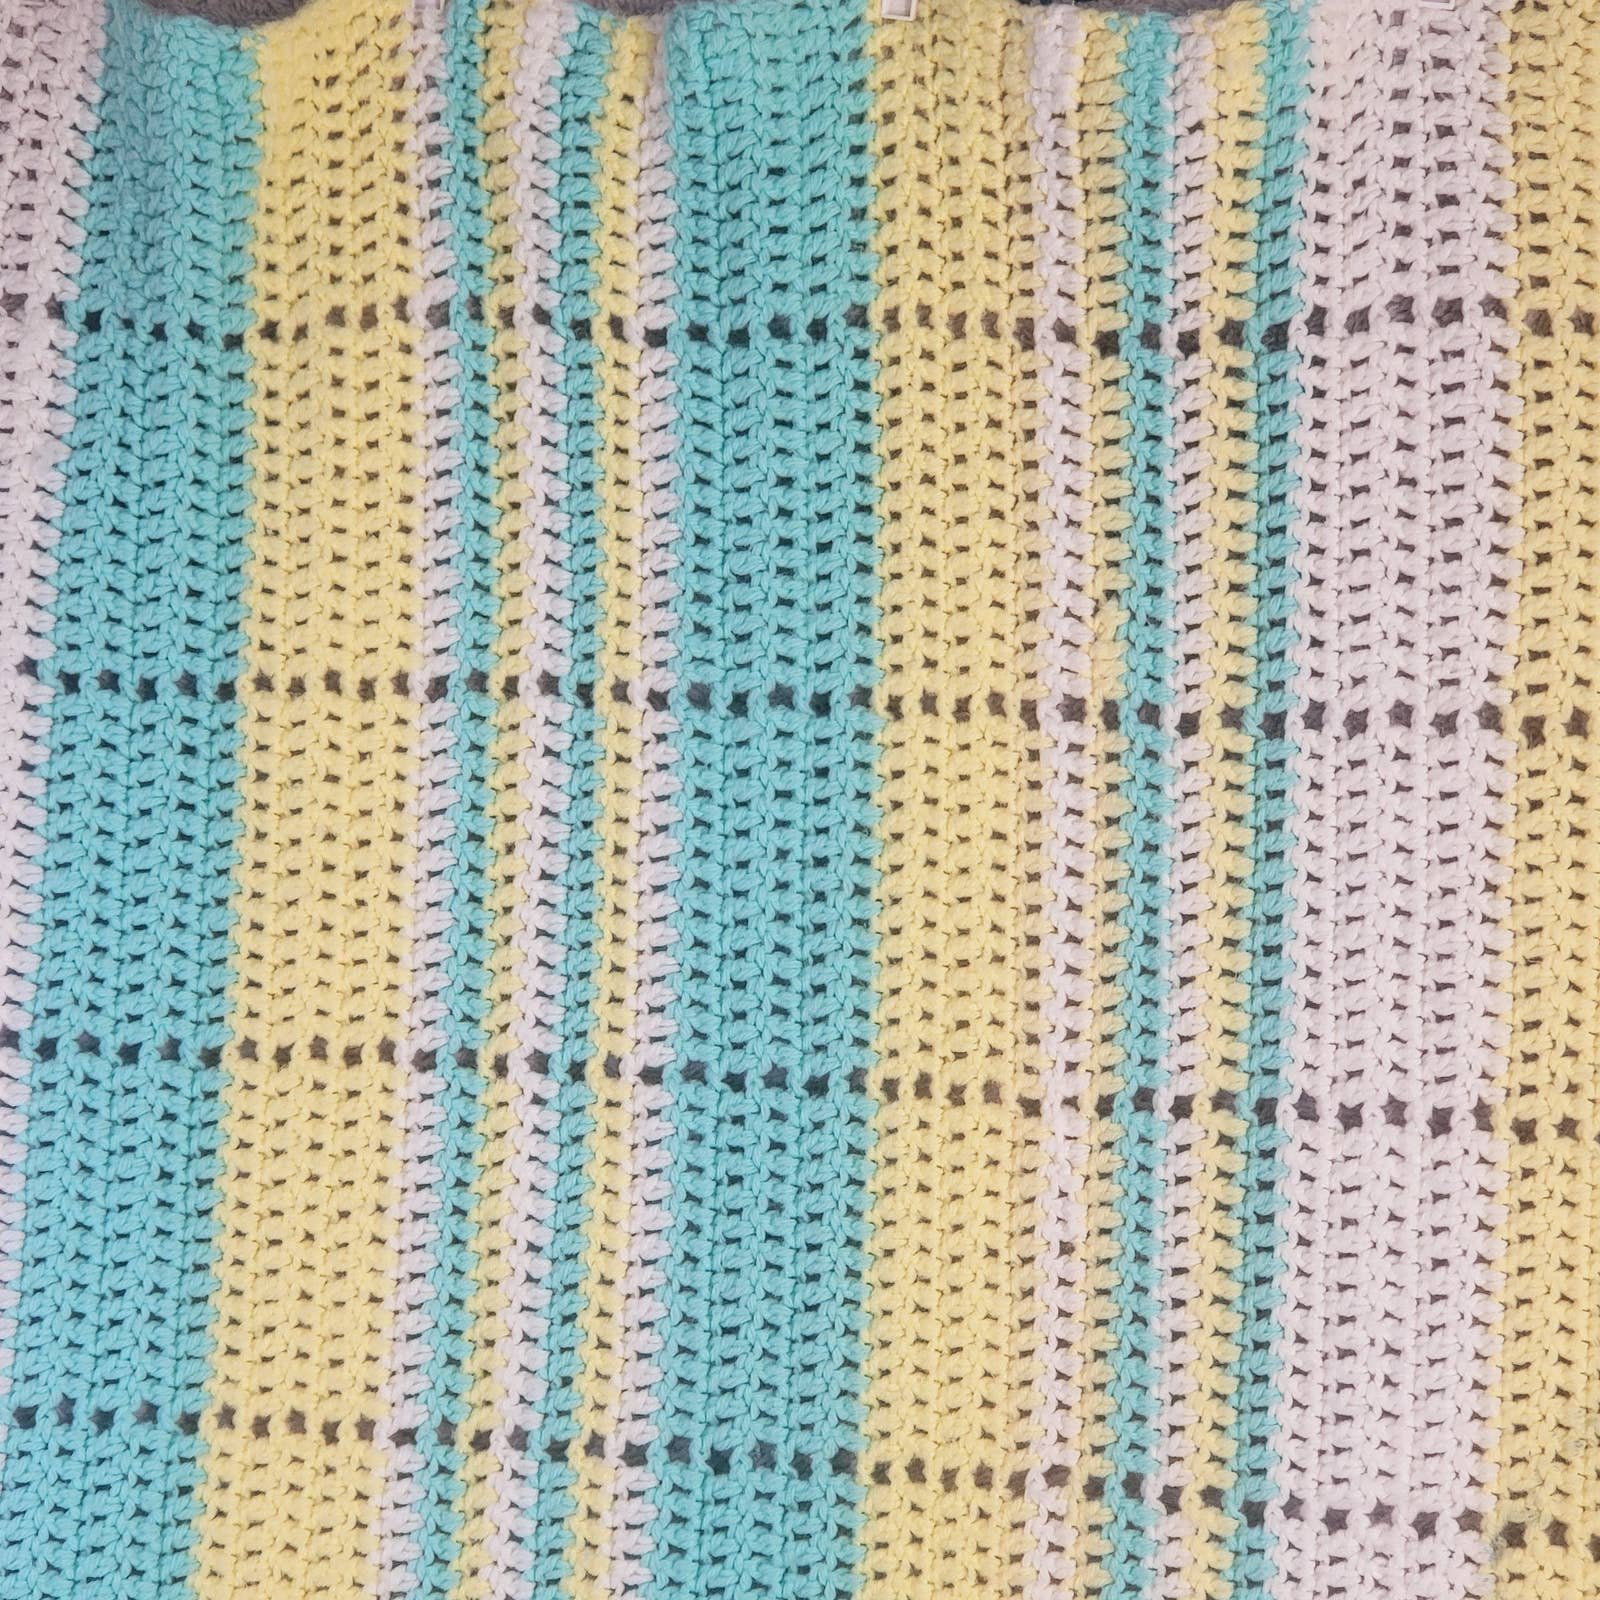 Vintage Handmade Knitted Afghan Throw Blanket 72